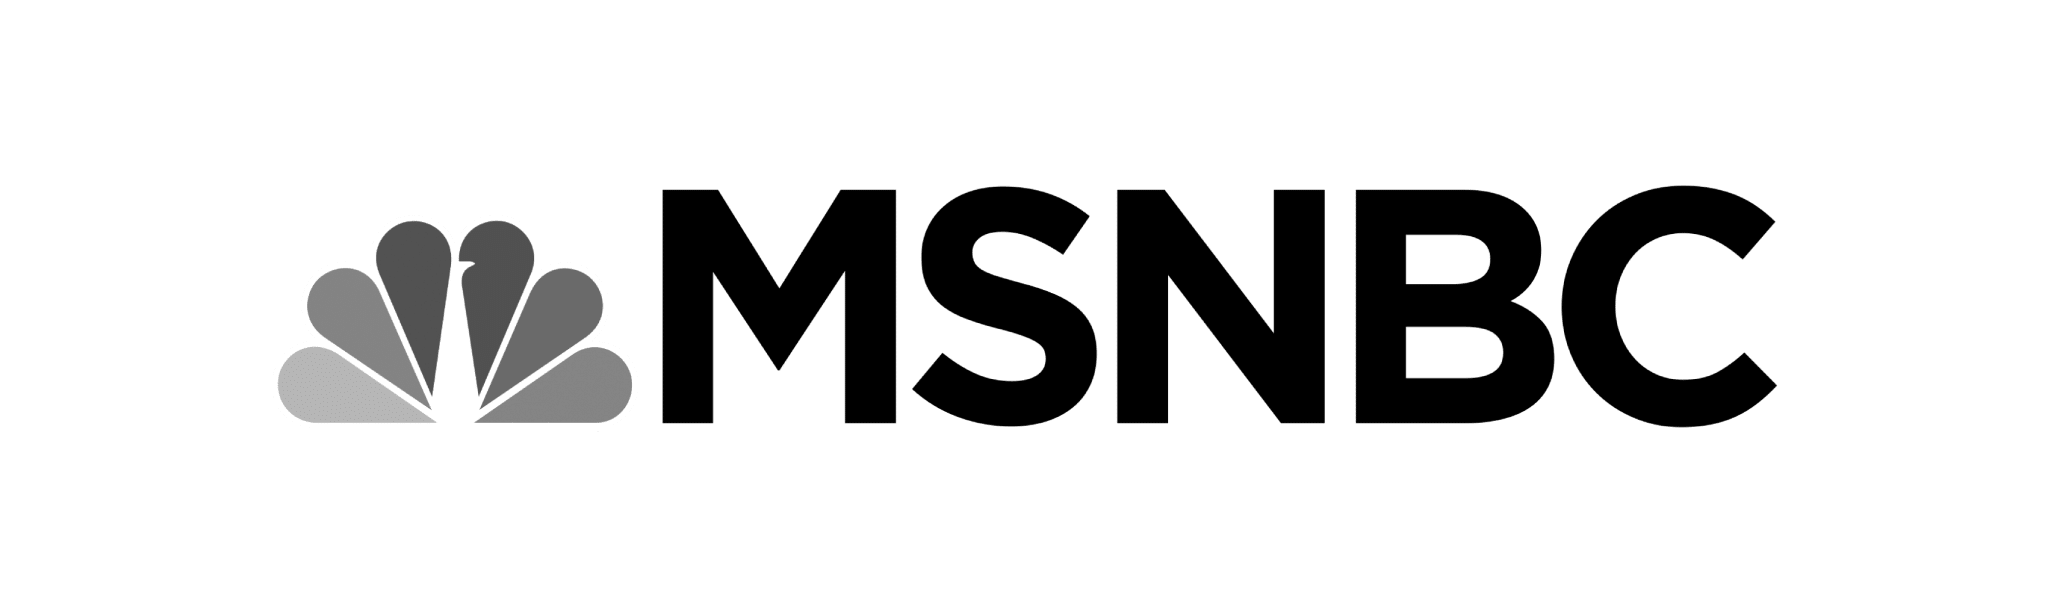 CFP Publication Logos MSNBC